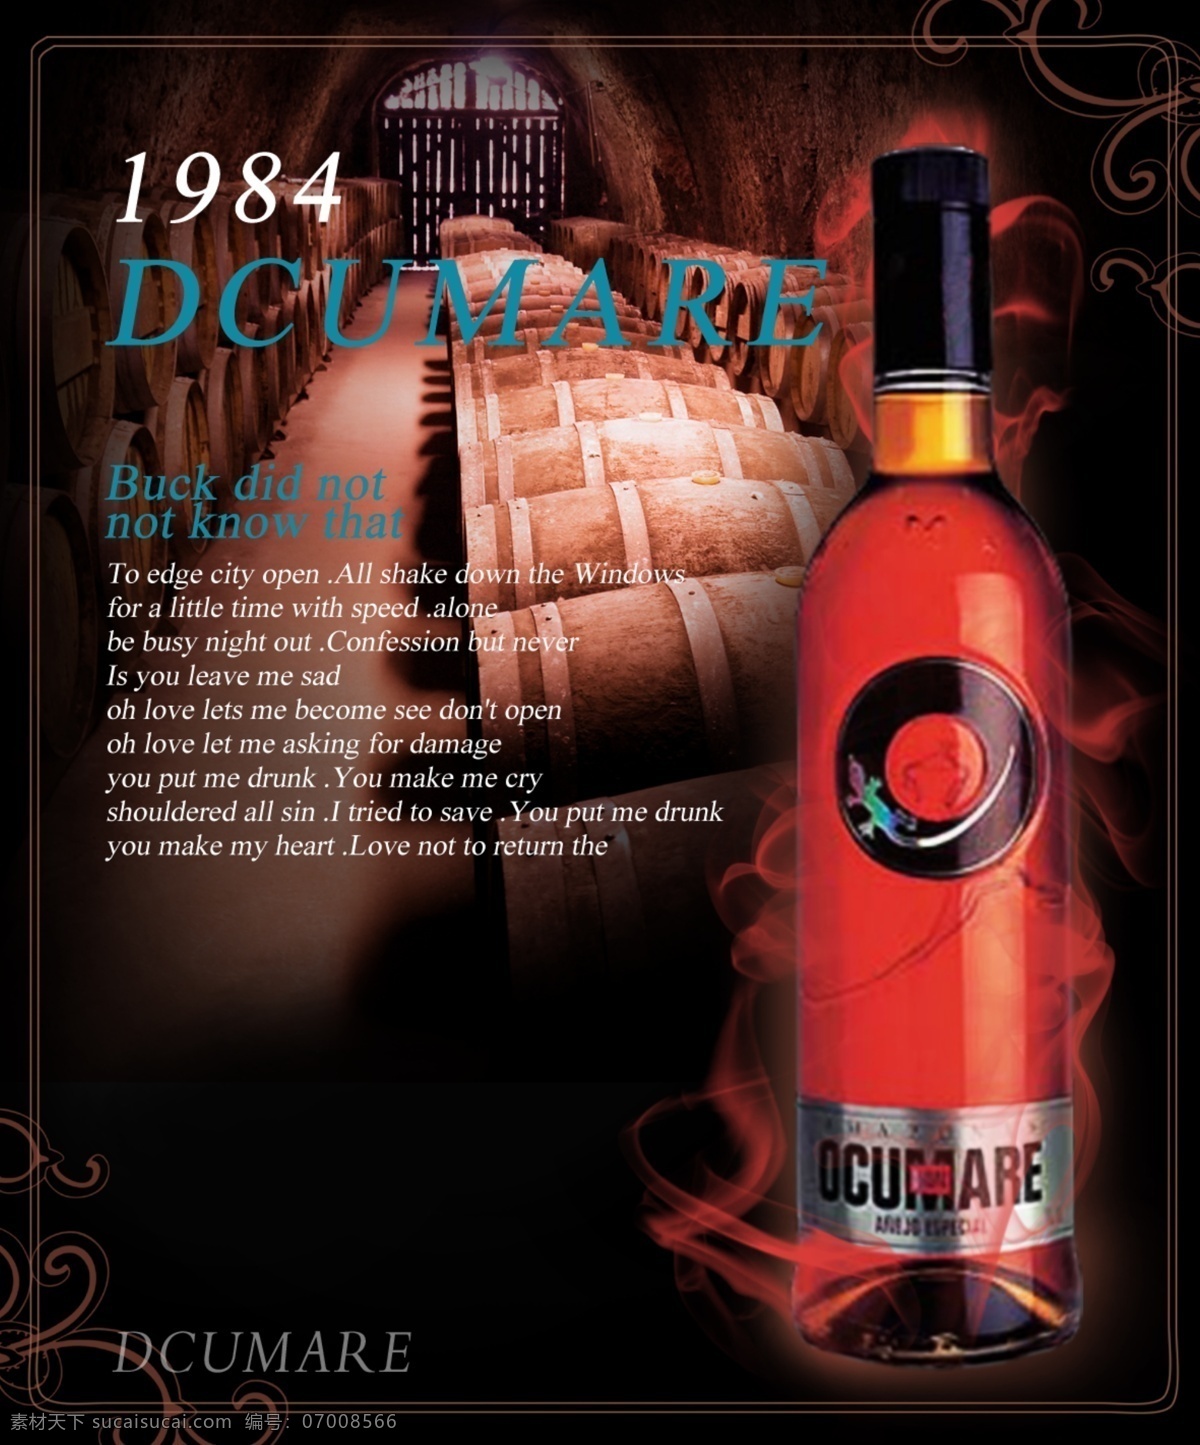 红酒报纸广告 红酒 报纸 广告 1984 dcumare 酒庄 酒瓶 红酒瓶 酒桶 花纹 烟雾 海报 户外 展板